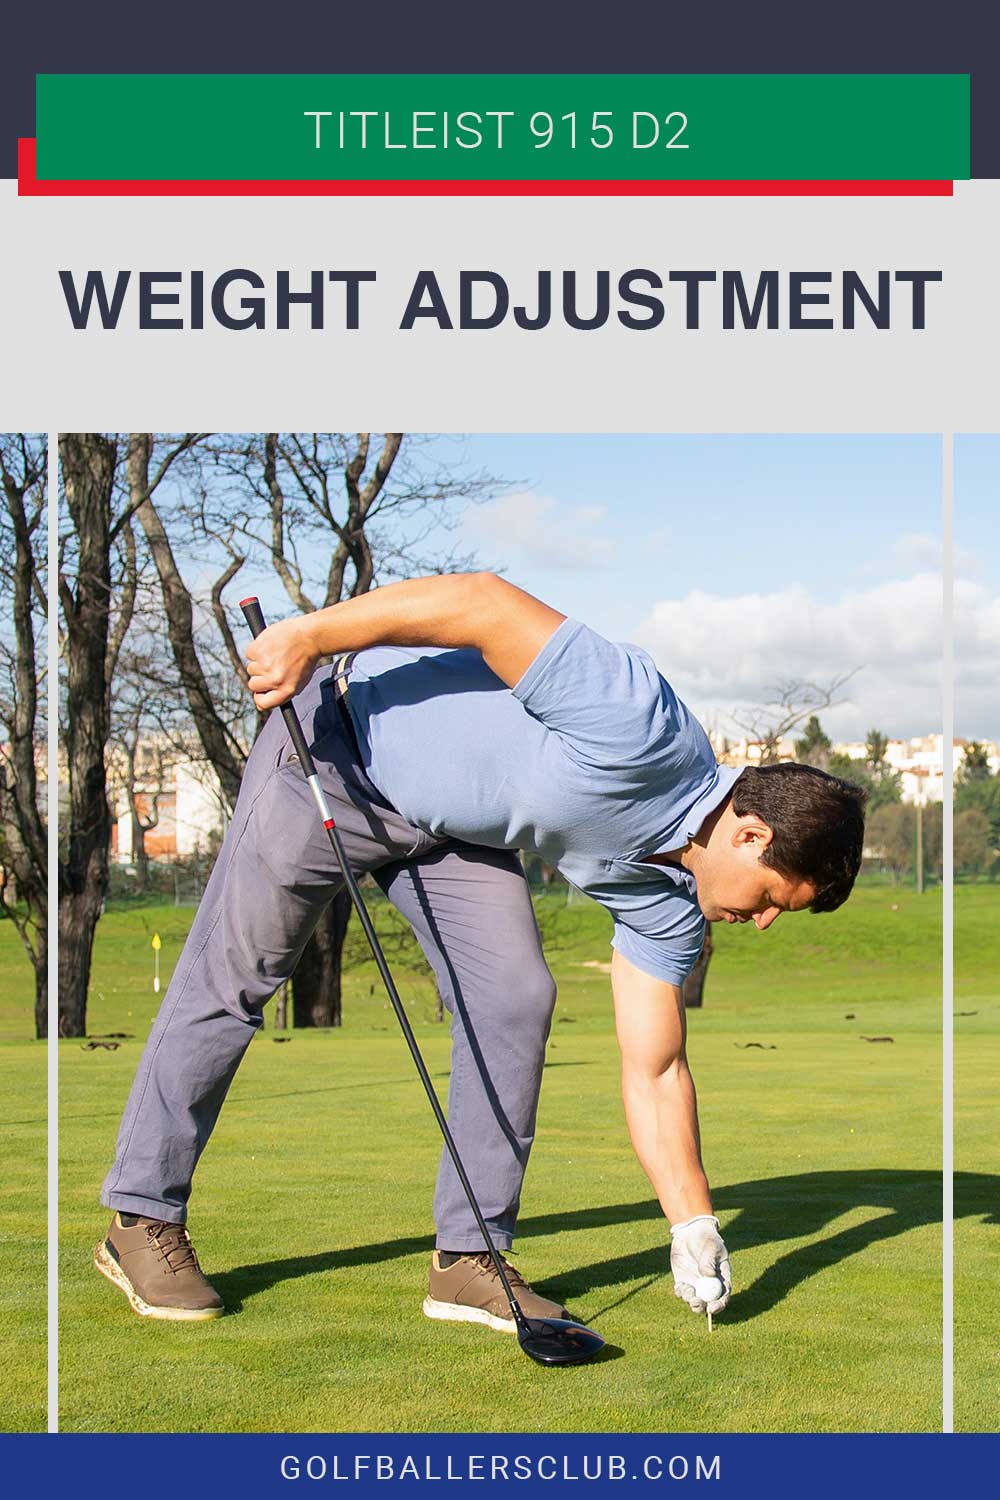 man placing a golf ball on tee - Titleist 915 D2 weight adjustment.